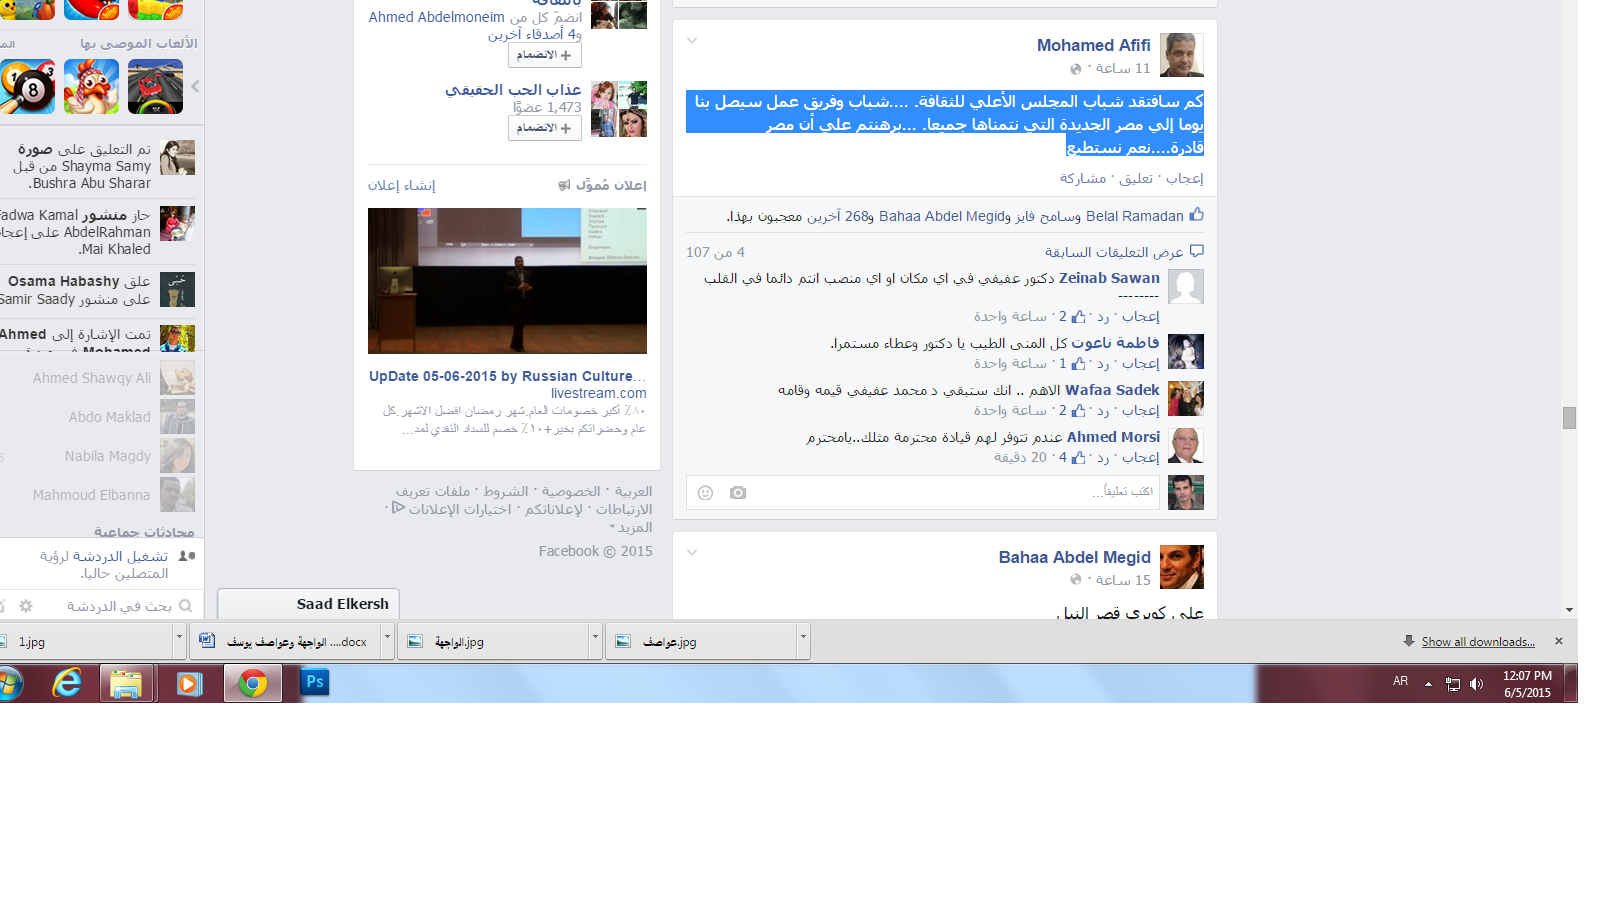 رسالة محمد عفيفى على صفحته الشخصية بالفيس بوك  -اليوم السابع -6 -2015